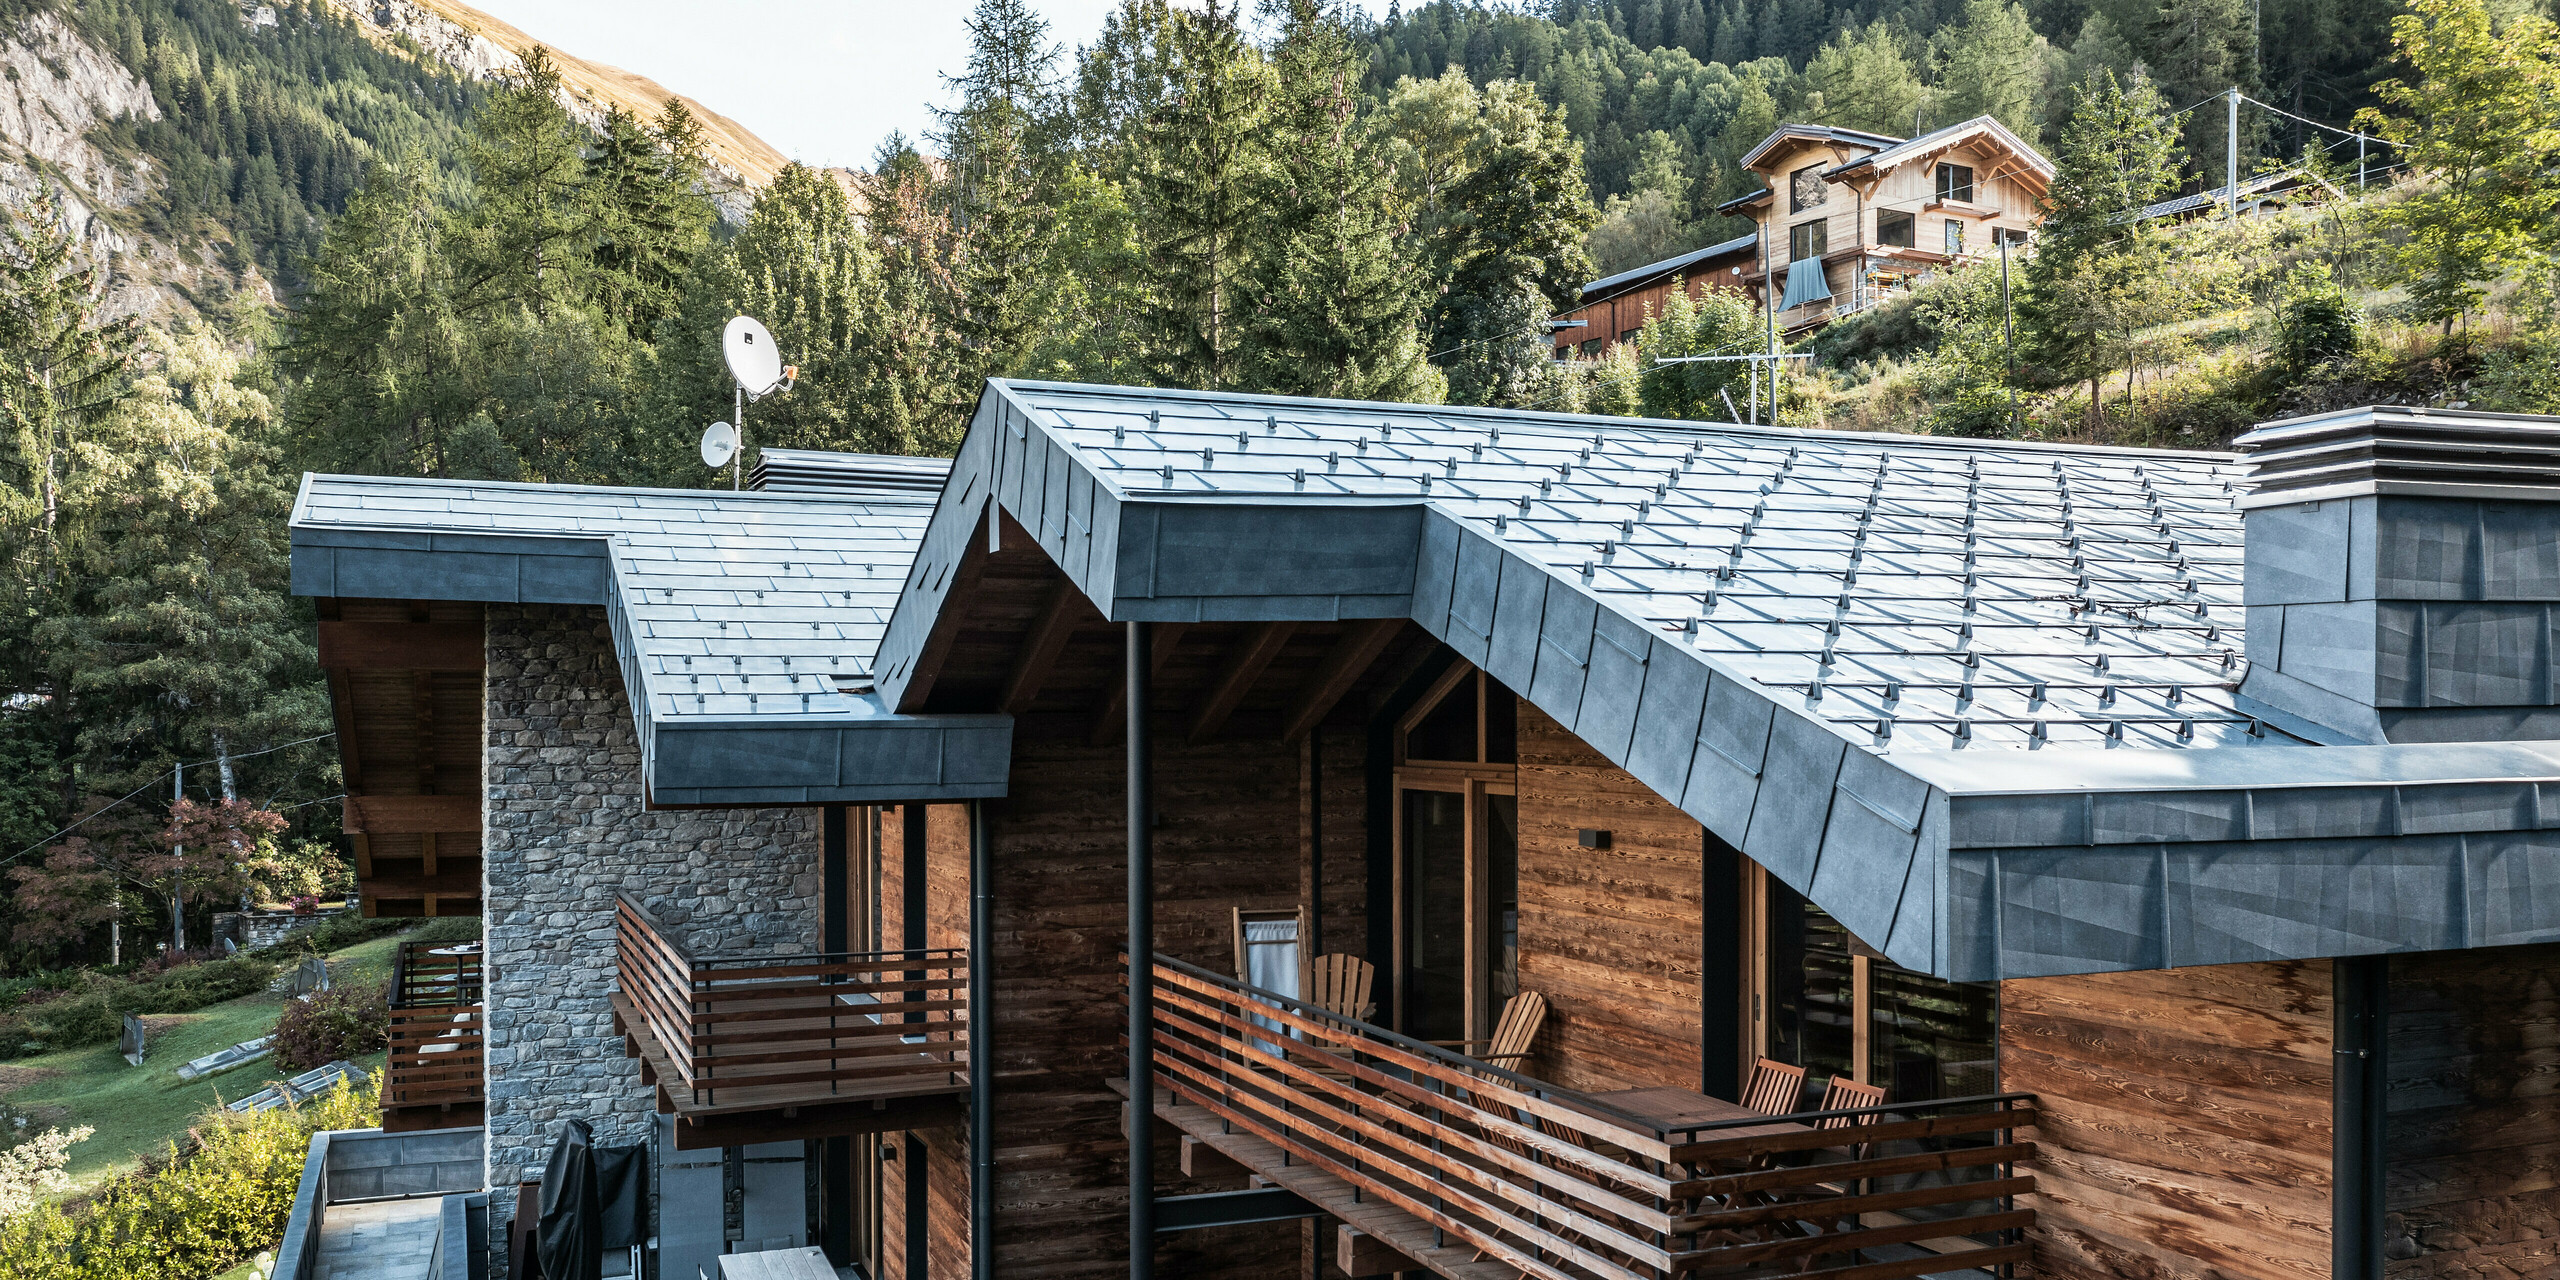 Komplexní vila v Courmayeur s dřevěnými fasádami a hliníkovými střešními panely PREFA FX.12 v barvě P.10 břidlicové. Architektura kombinuje moderní a tradiční prvky, jako je zdivo z přírodního kamene a vícepatrové dřevěné konstrukce, doplněné stylovými hliníkovými detaily. Několik balkonů a teras poskytuje dostatek venkovního prostoru doplněného svěží zelení a dramatickou horskou krajinou za nimi.